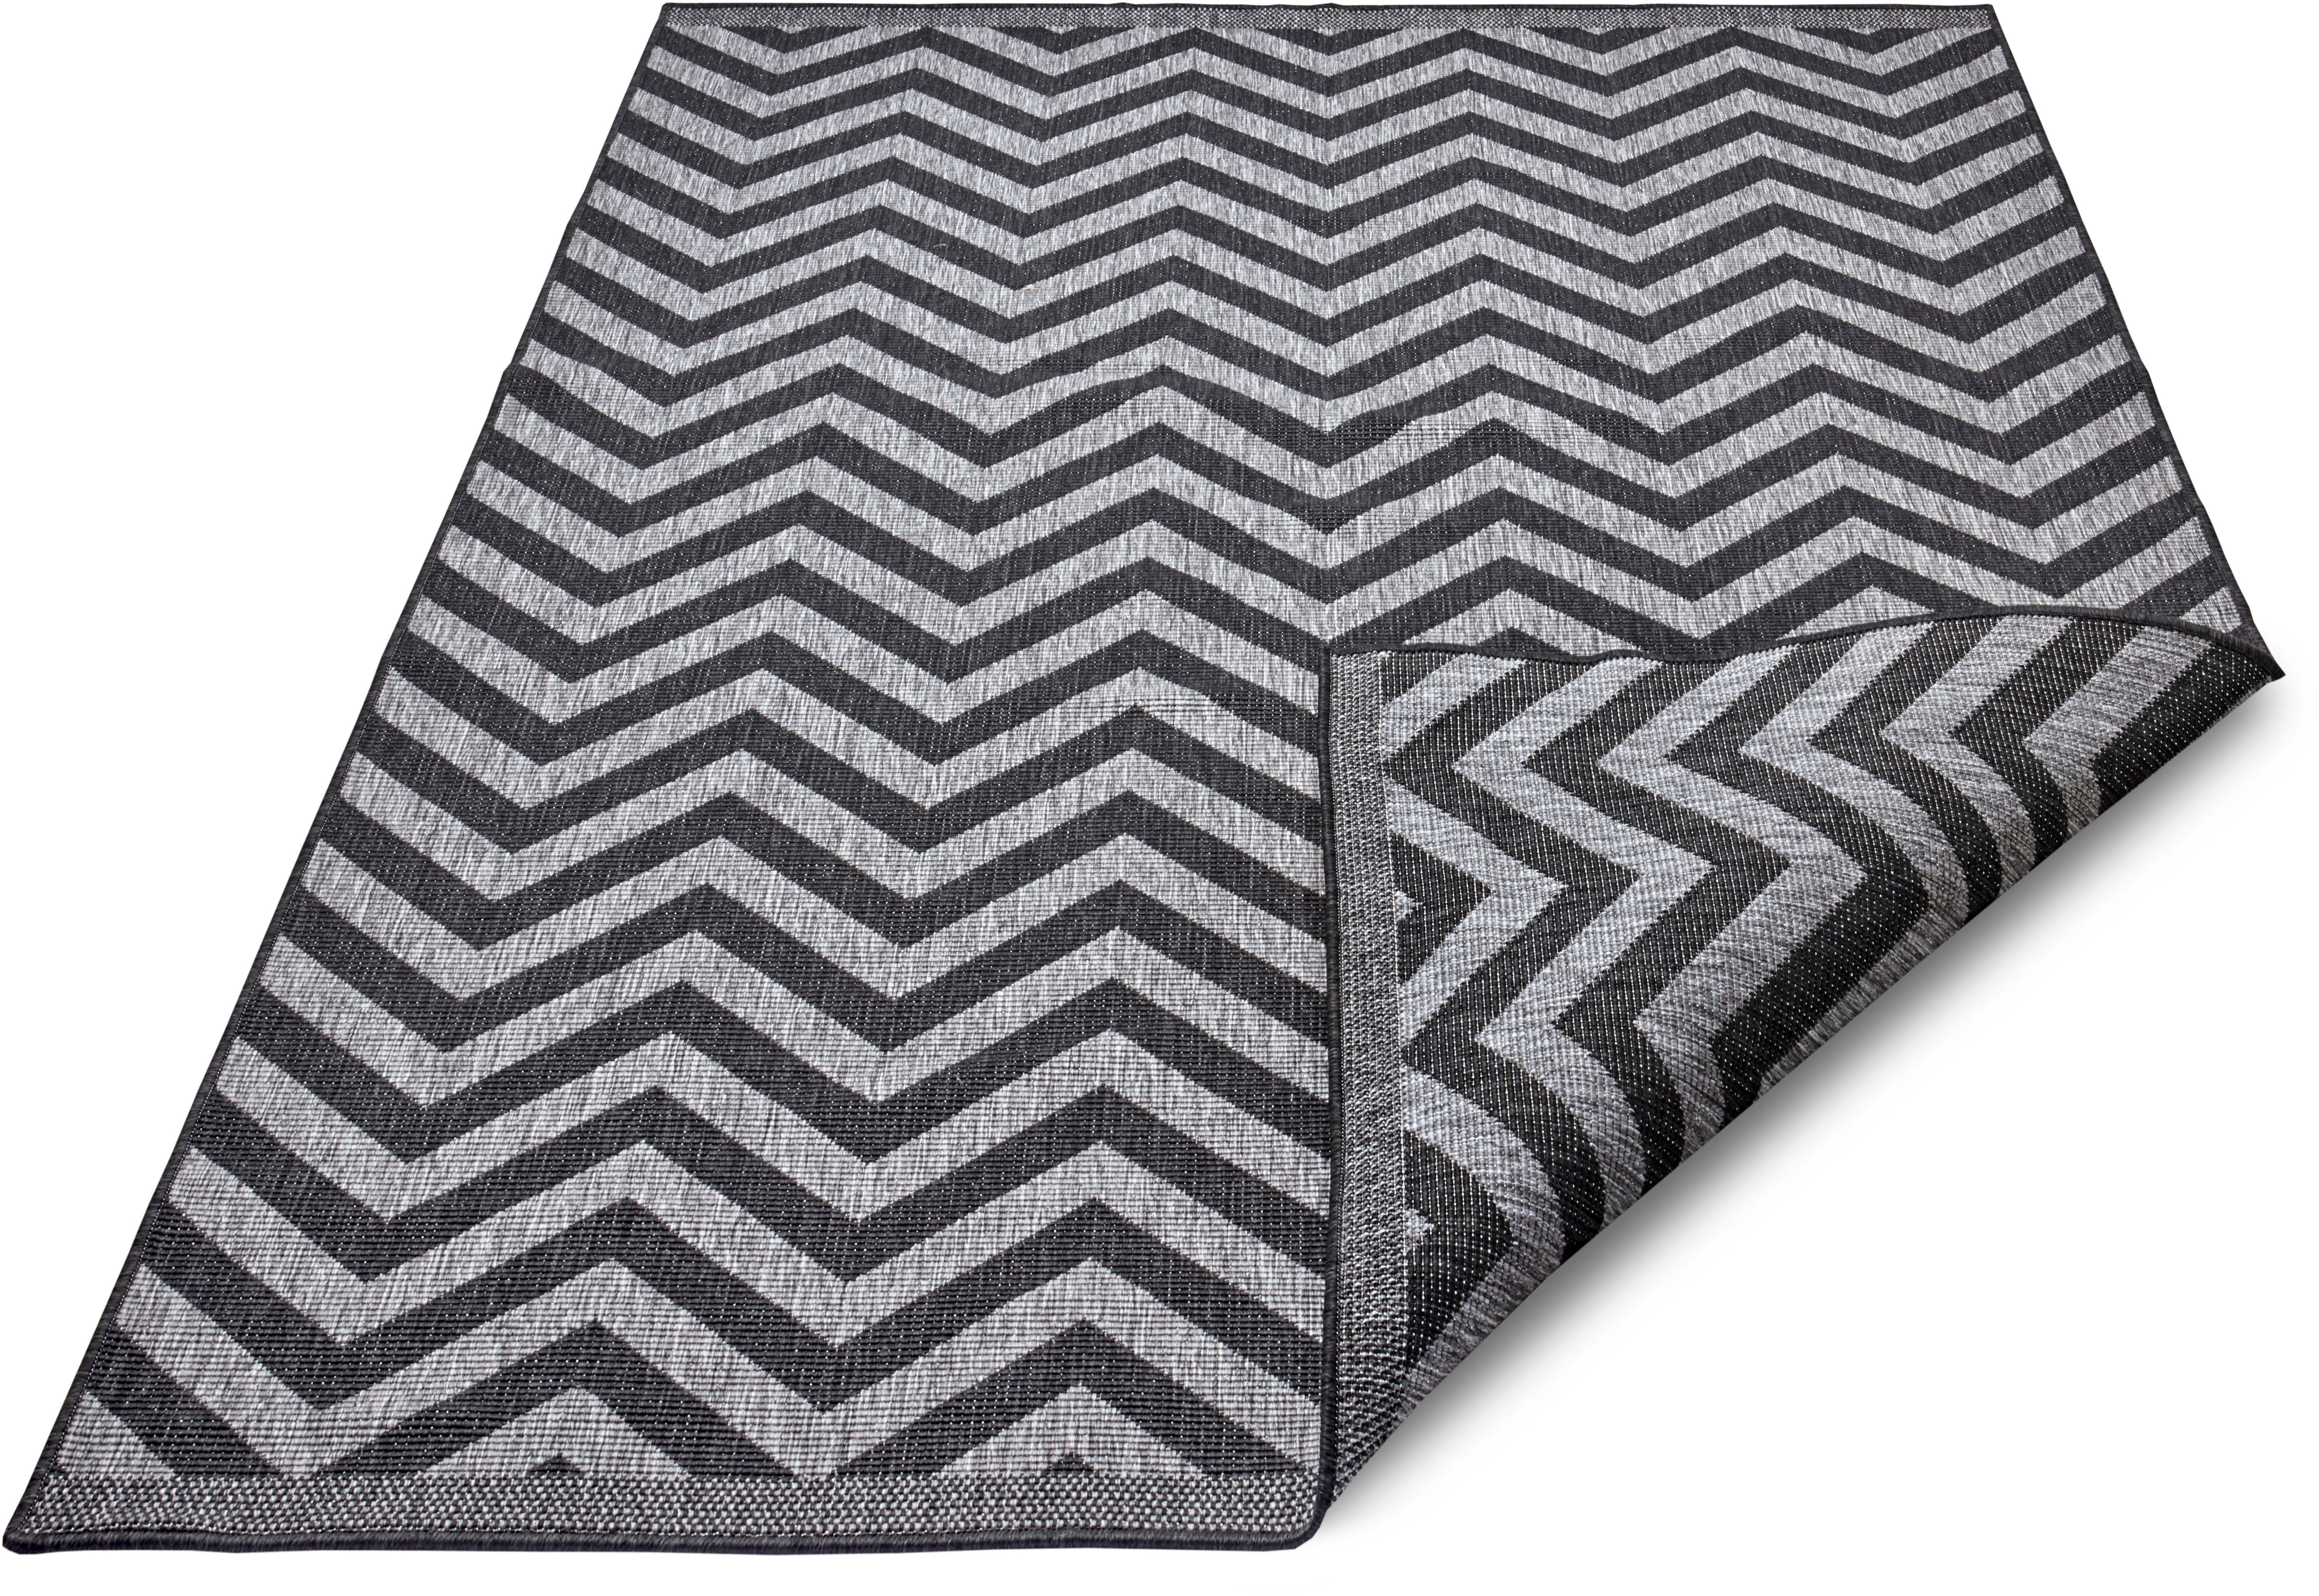 Binnen & buiten vloerkleed zigzag Palma - zilver/zwart 200x290 cm